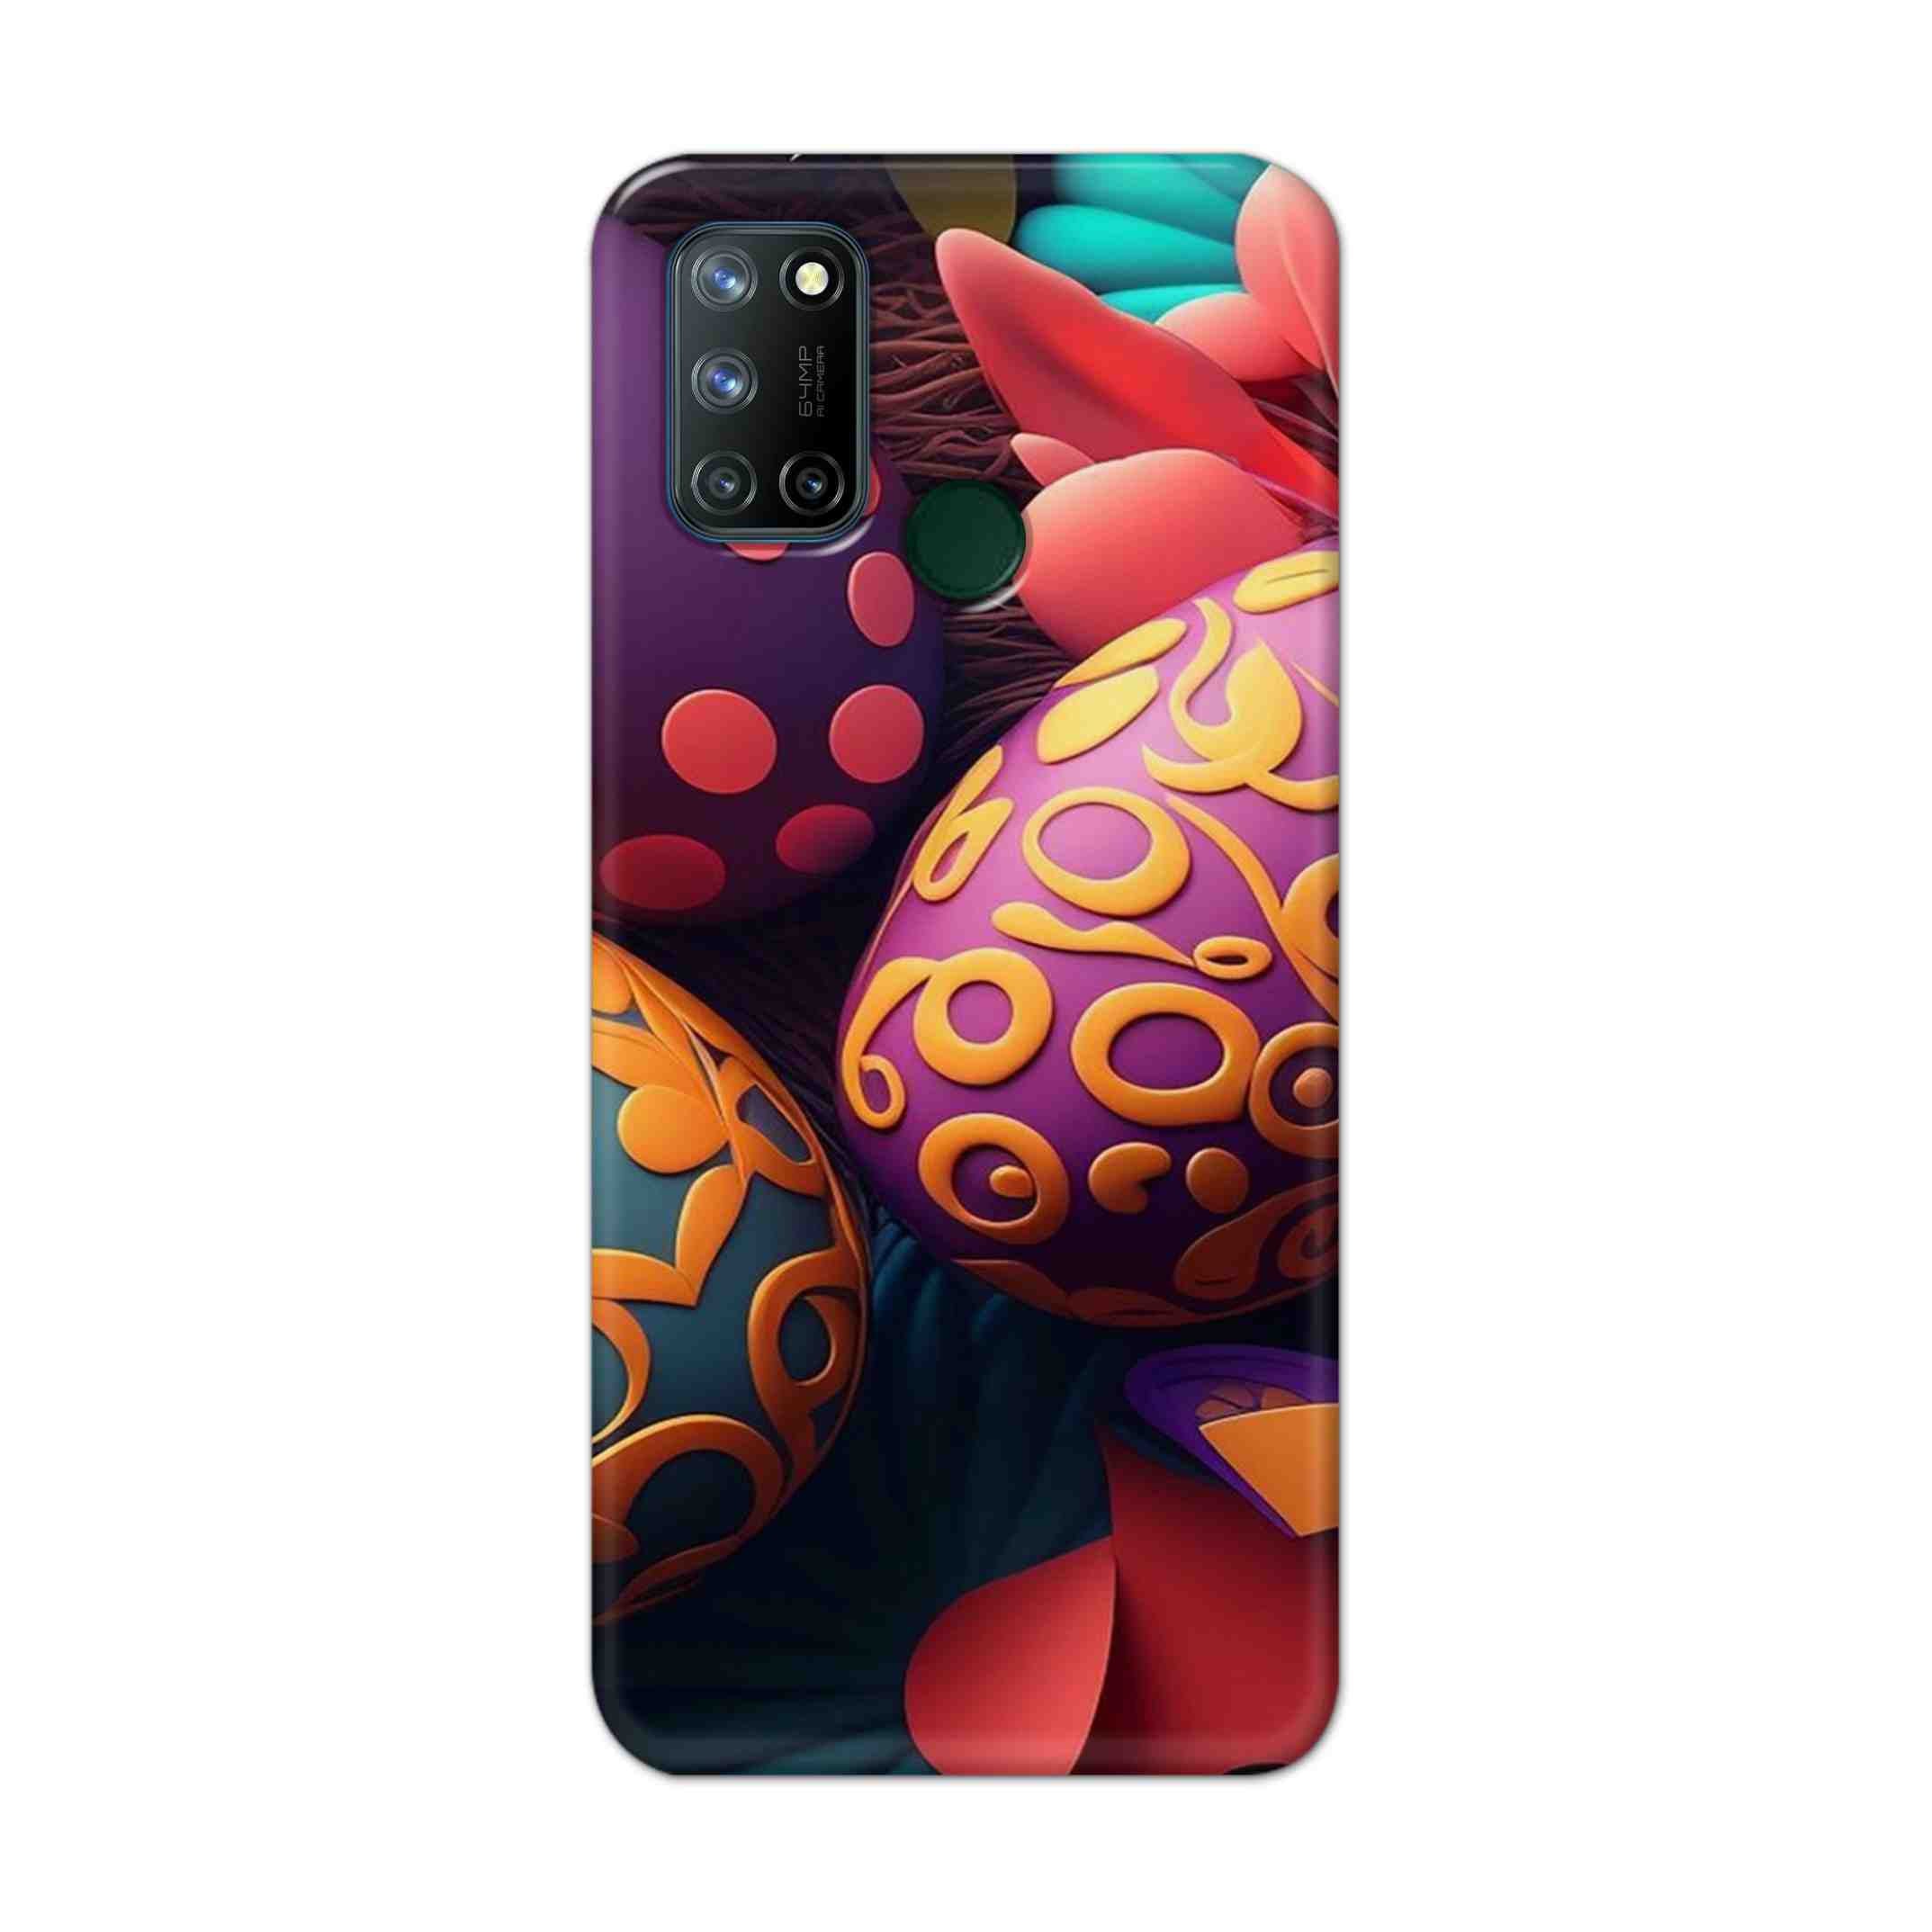 Buy Easter Egg Hard Back Mobile Phone Case Cover For Realme 7i Online